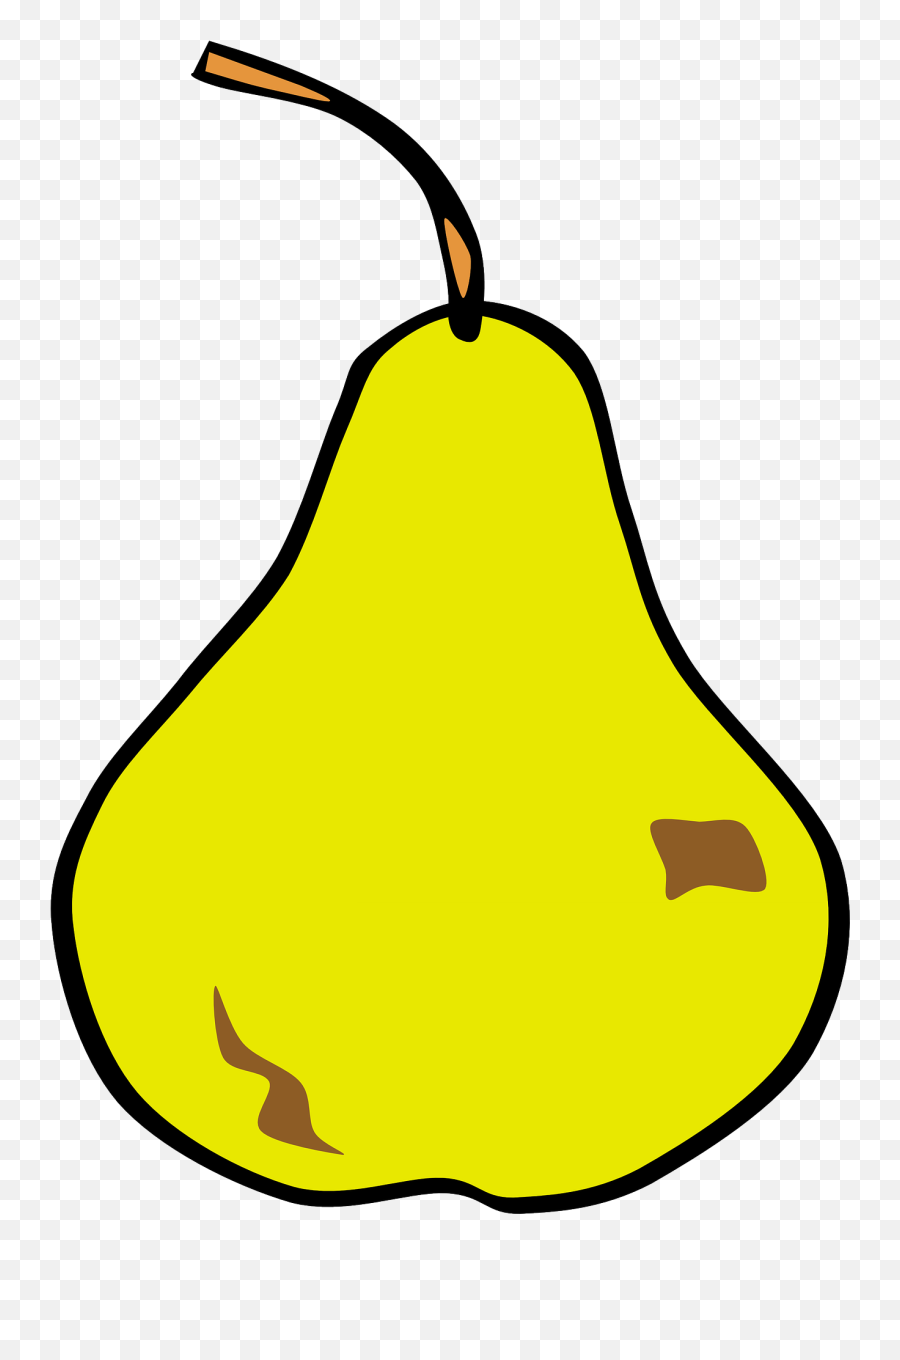 Fruit Pears Yellow Drawing Free Image Download Emoji,Emojis Whatsapp Paleta